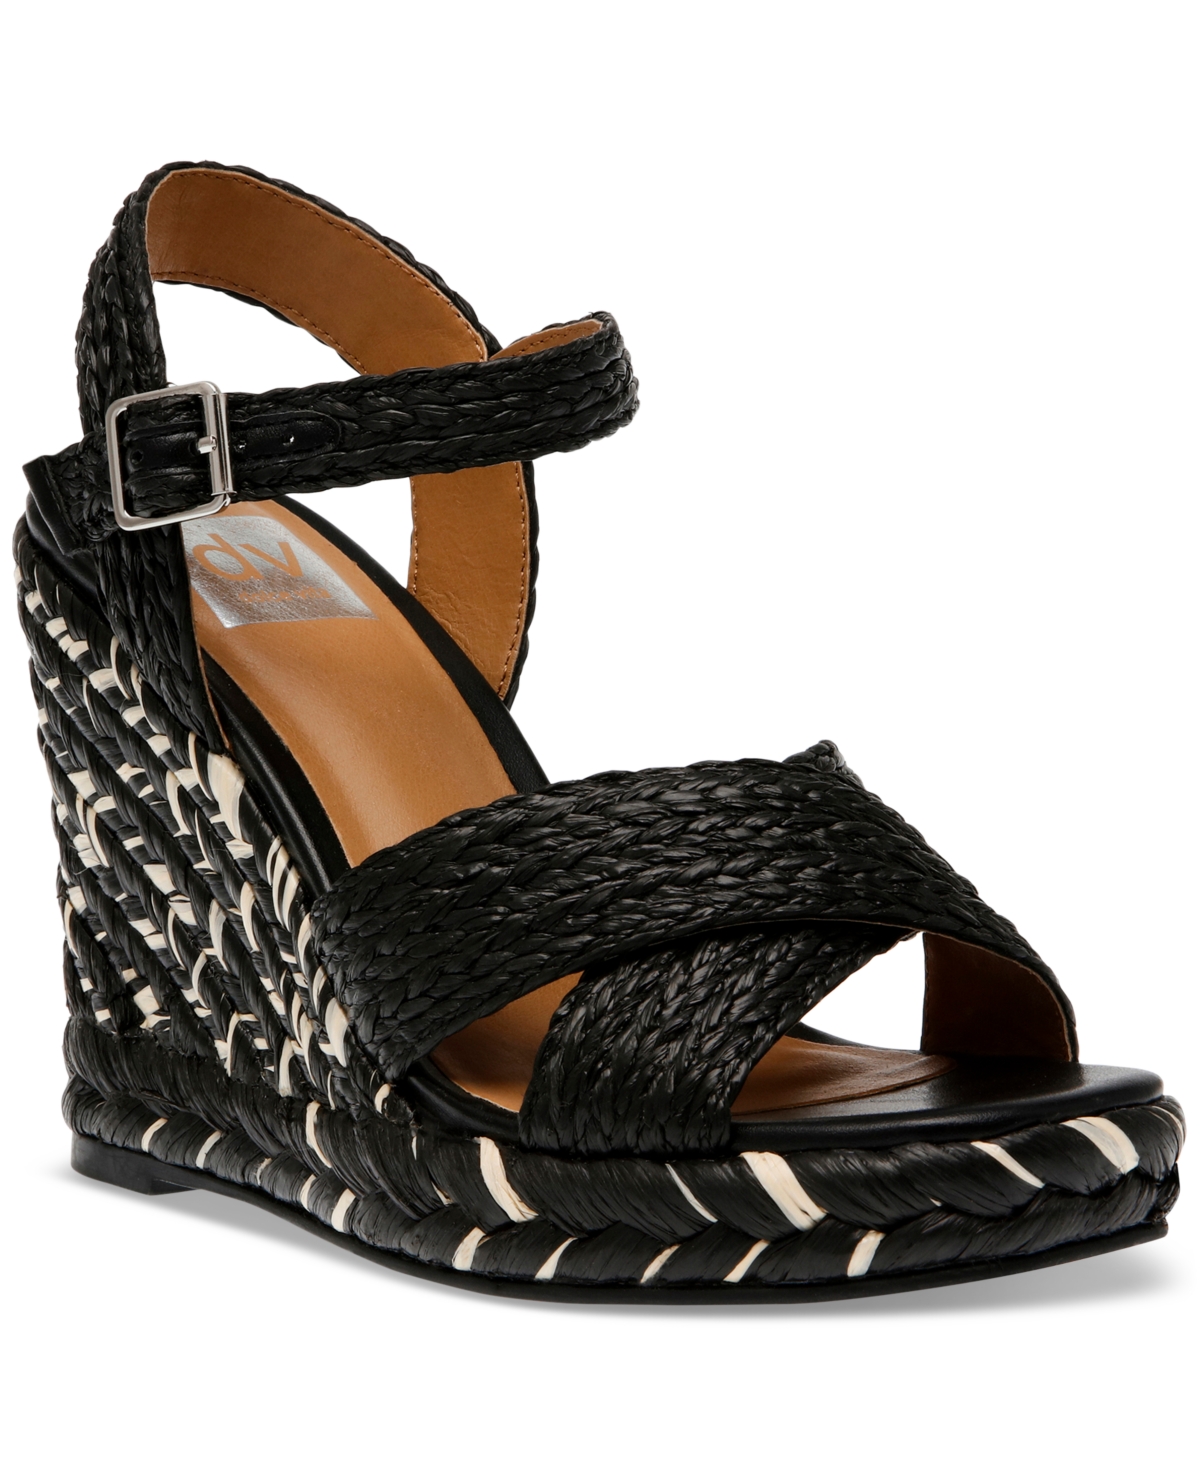 Women's Herd Ankle-Strap Espadrille Wedge Sandals - Black Raffia